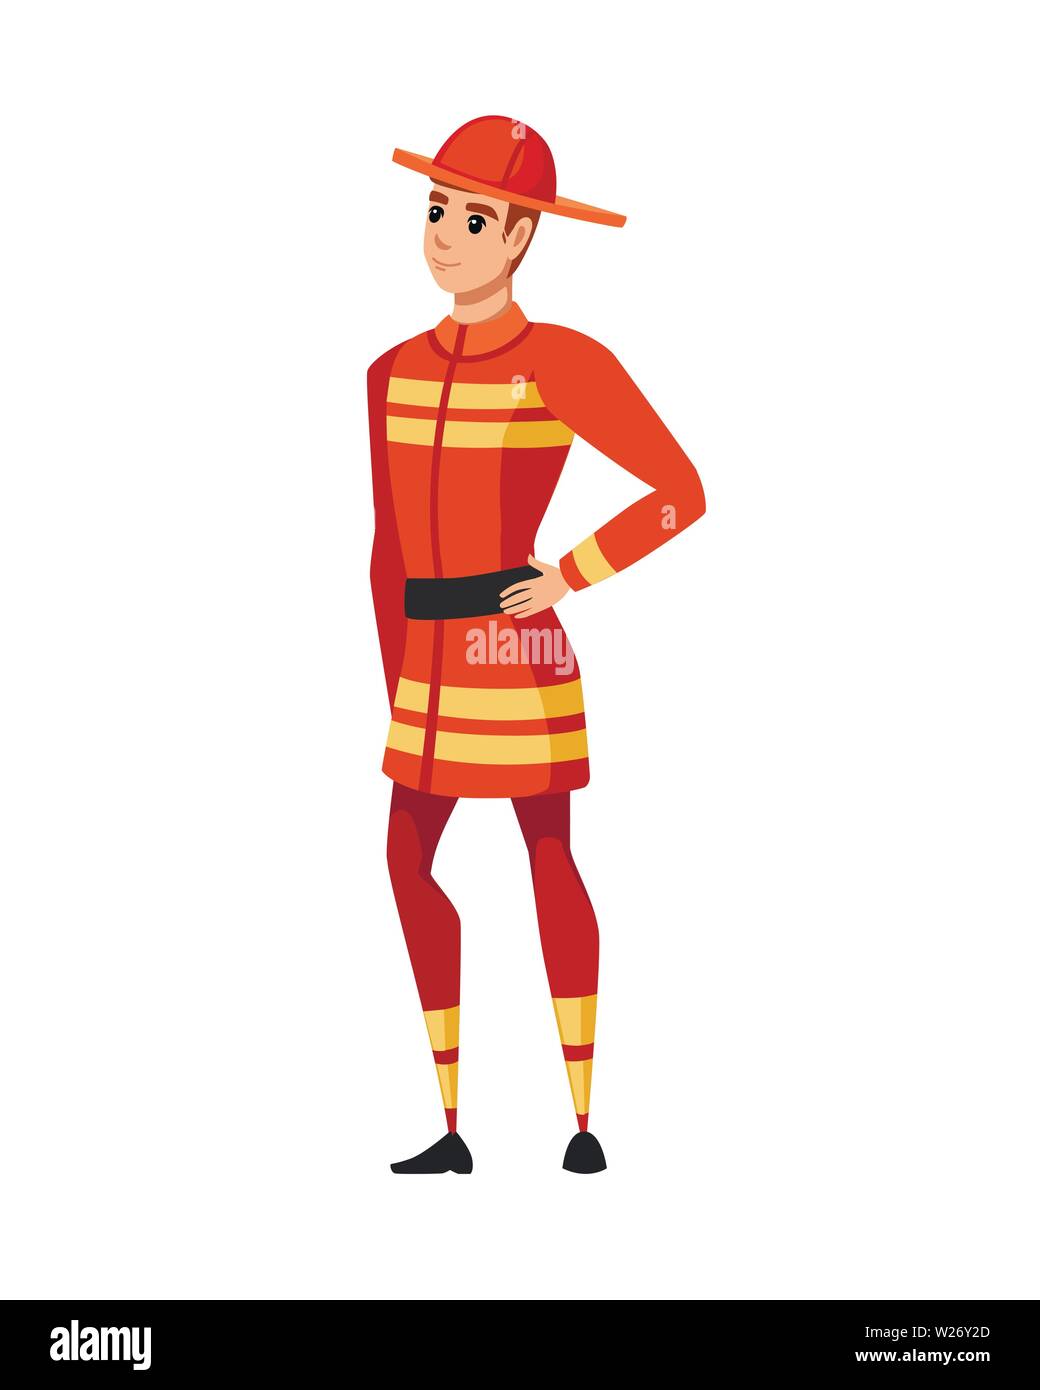 Erwachsene männliche Feuerwehrmann stand auf dem Boden tragen feuerfeste Form Cartoon Character Design flachbild Vector Illustration. Stock Vektor